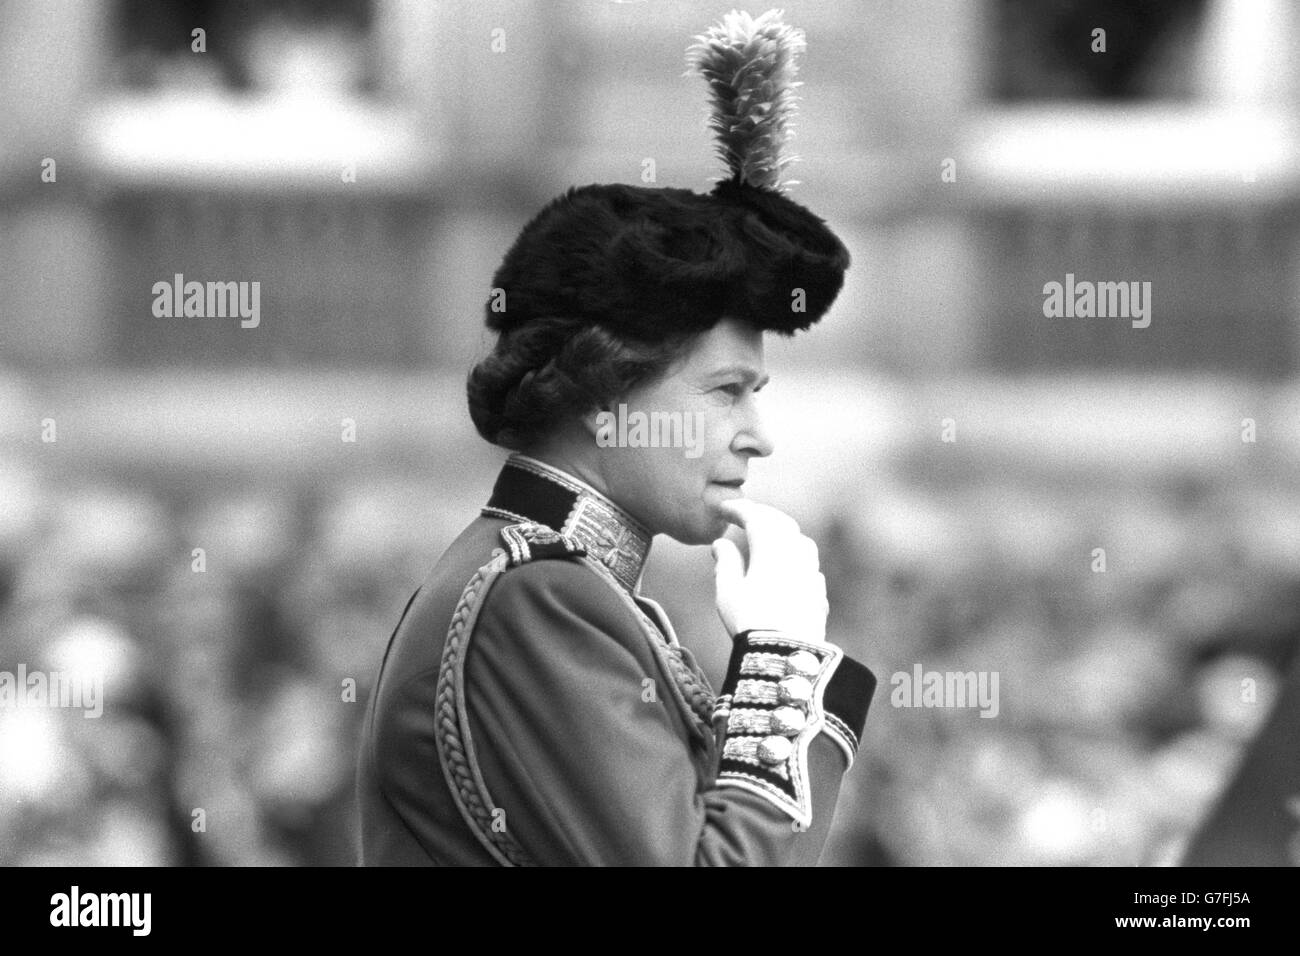 Image - Parade la couleur - Horse Guards Parade - Londres Banque D'Images